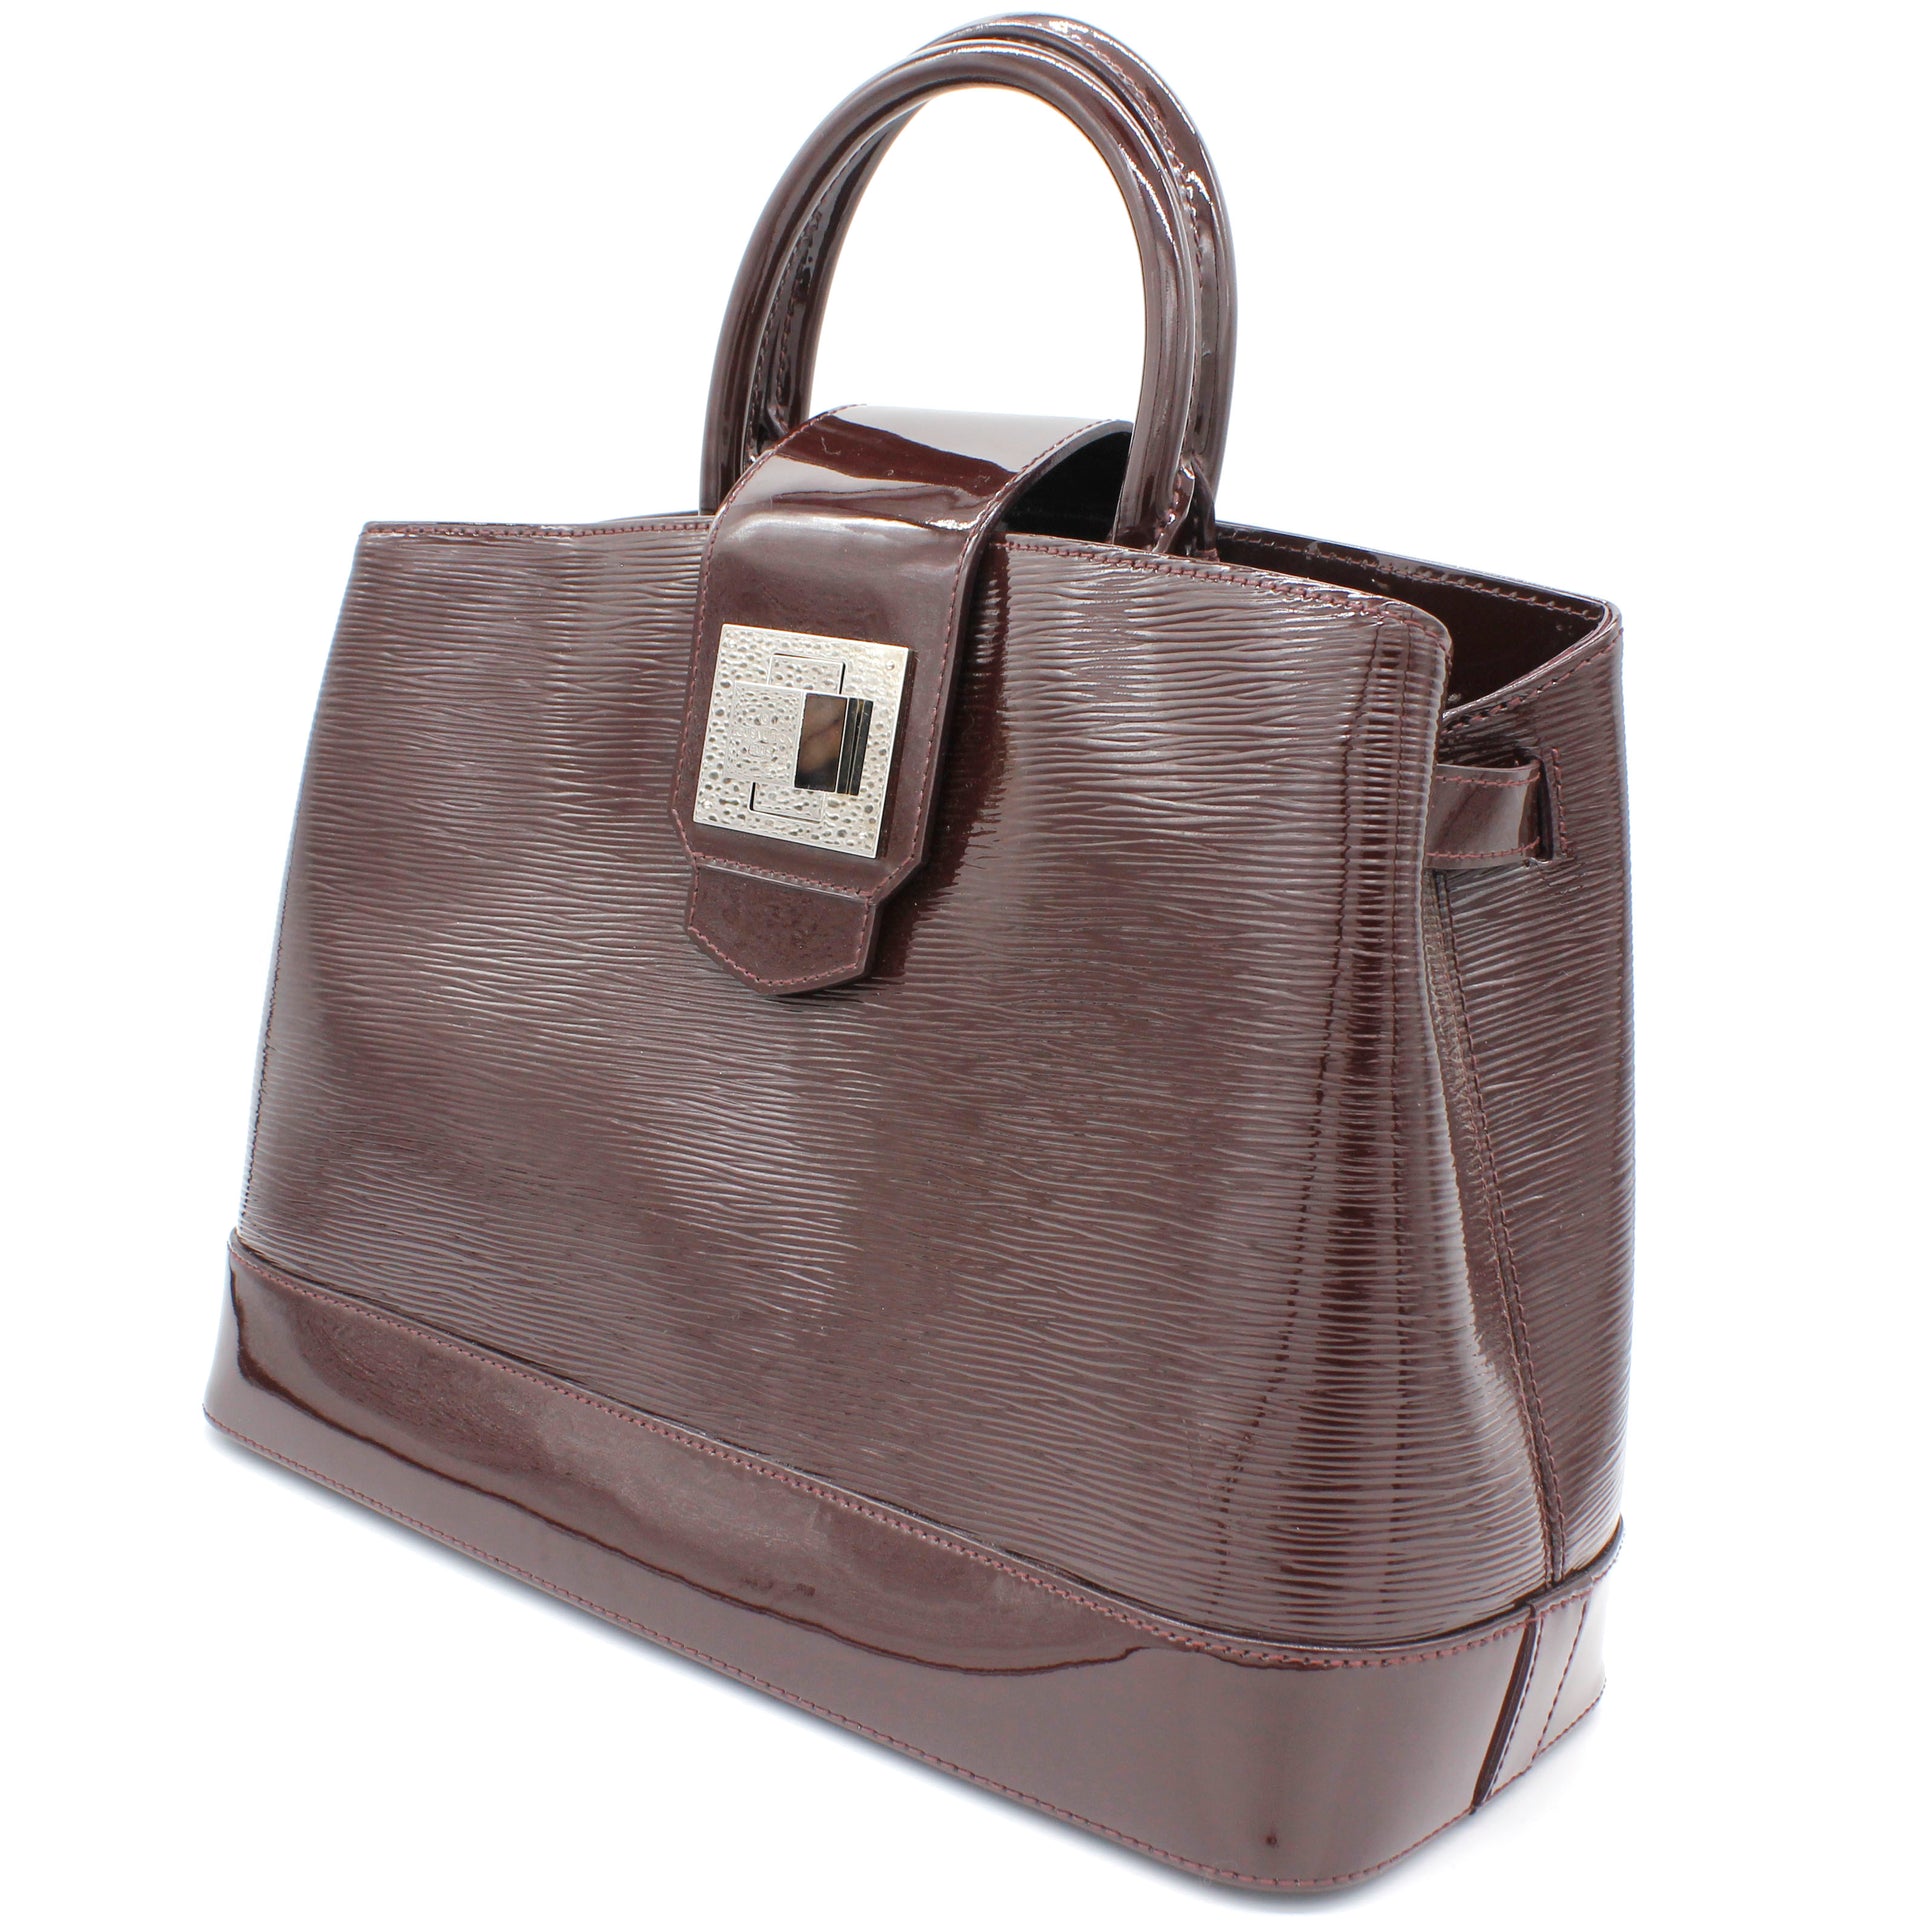 Louis Vuitton Mirabeau PM Epi Leather Top Handle Bag on SALE